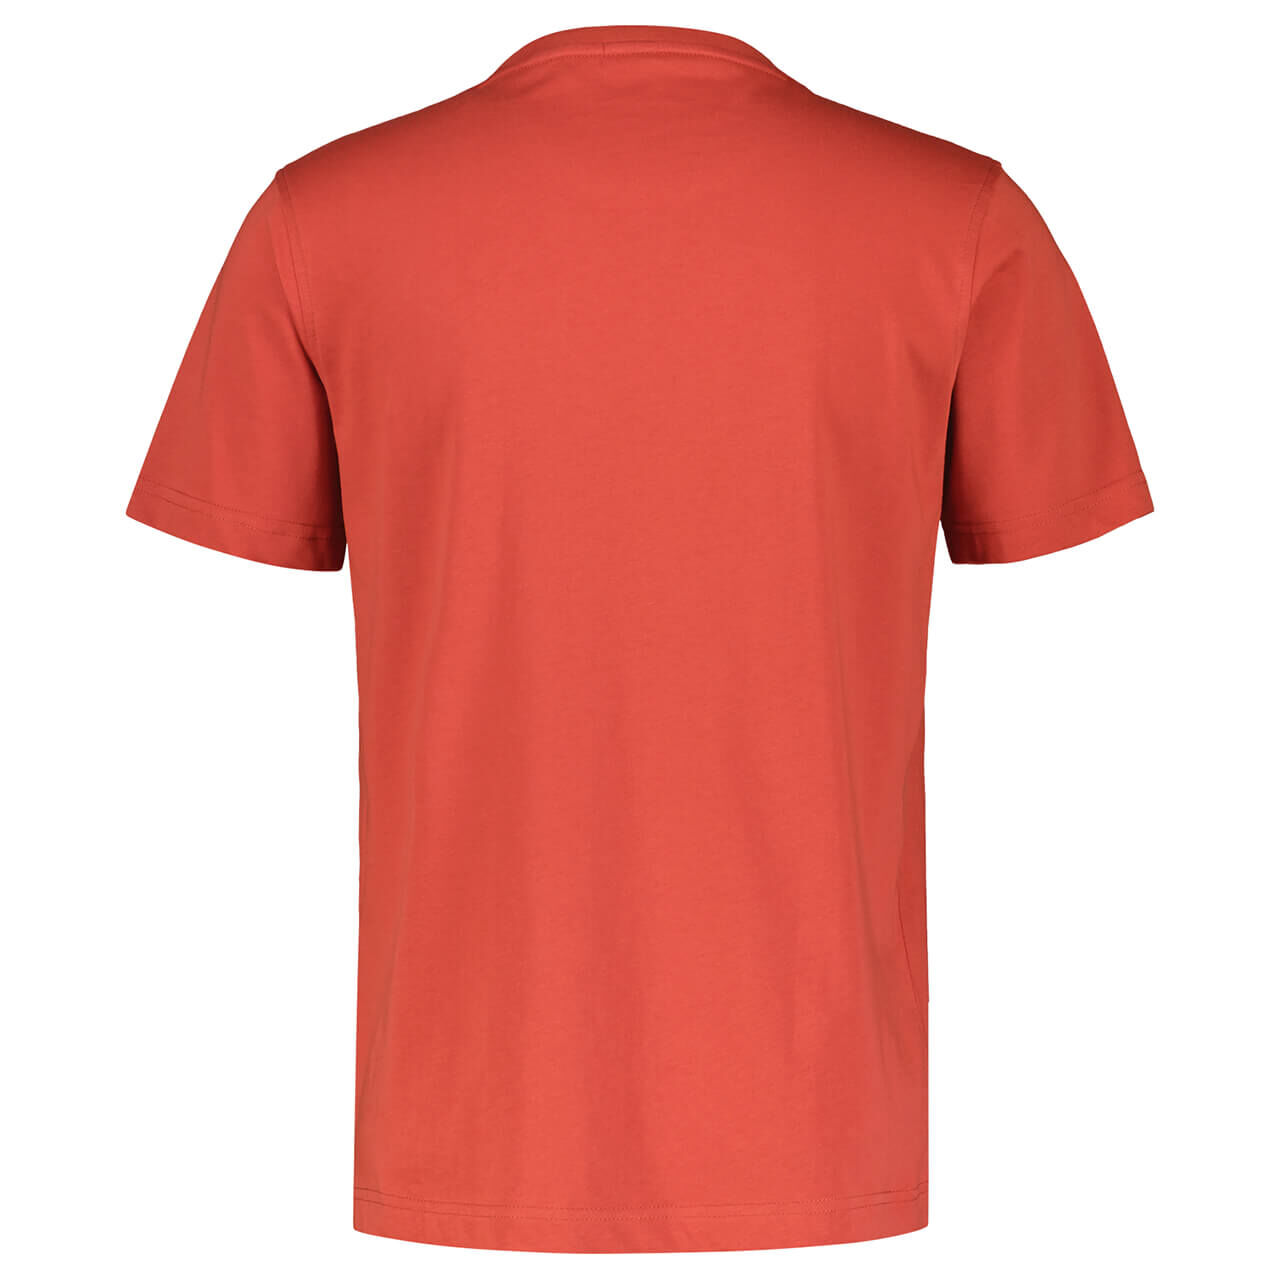 Lerros Herren T-Shirt deep coral red